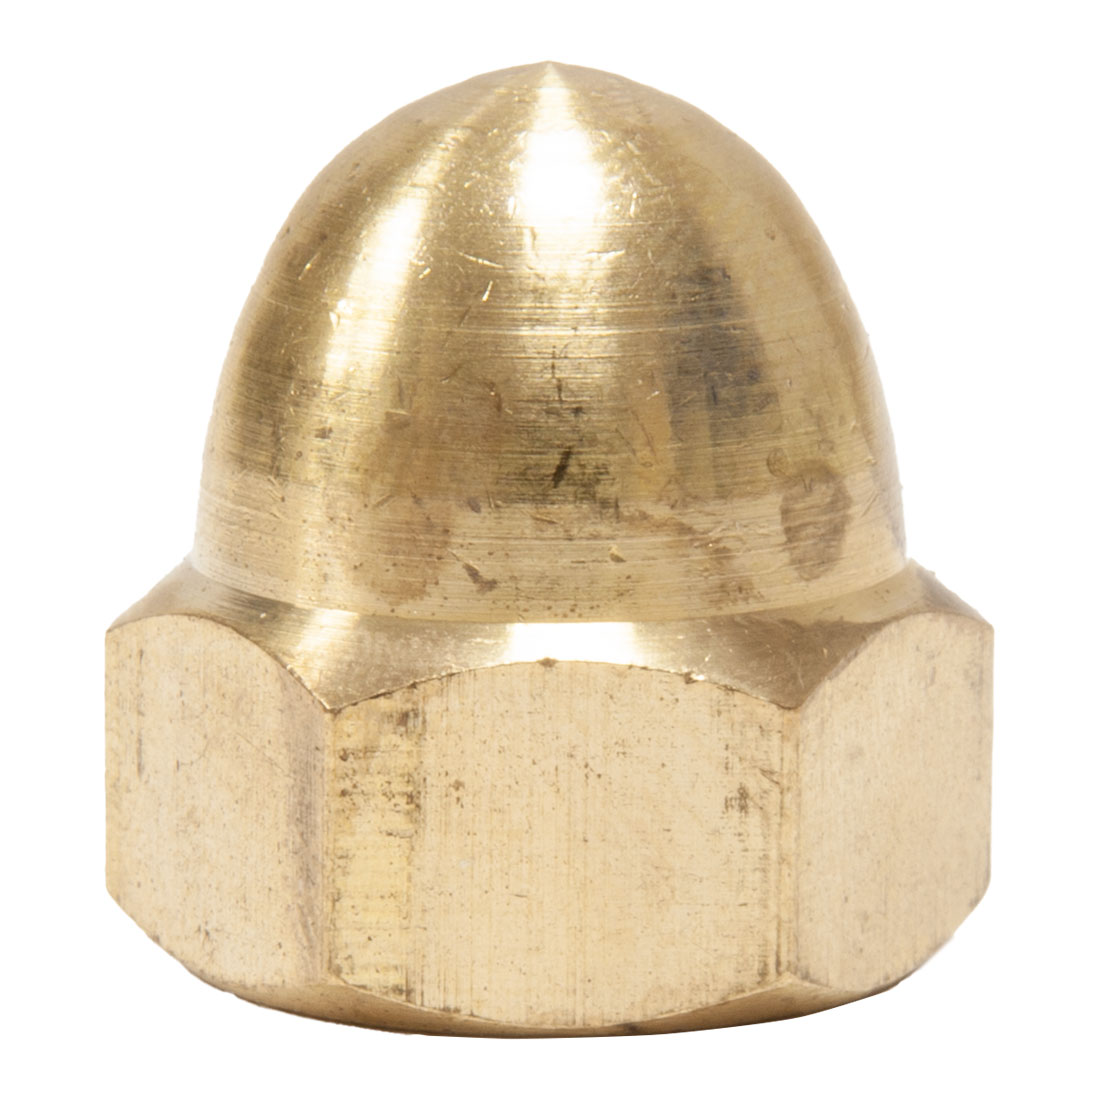 12mm Domed Brass Nut